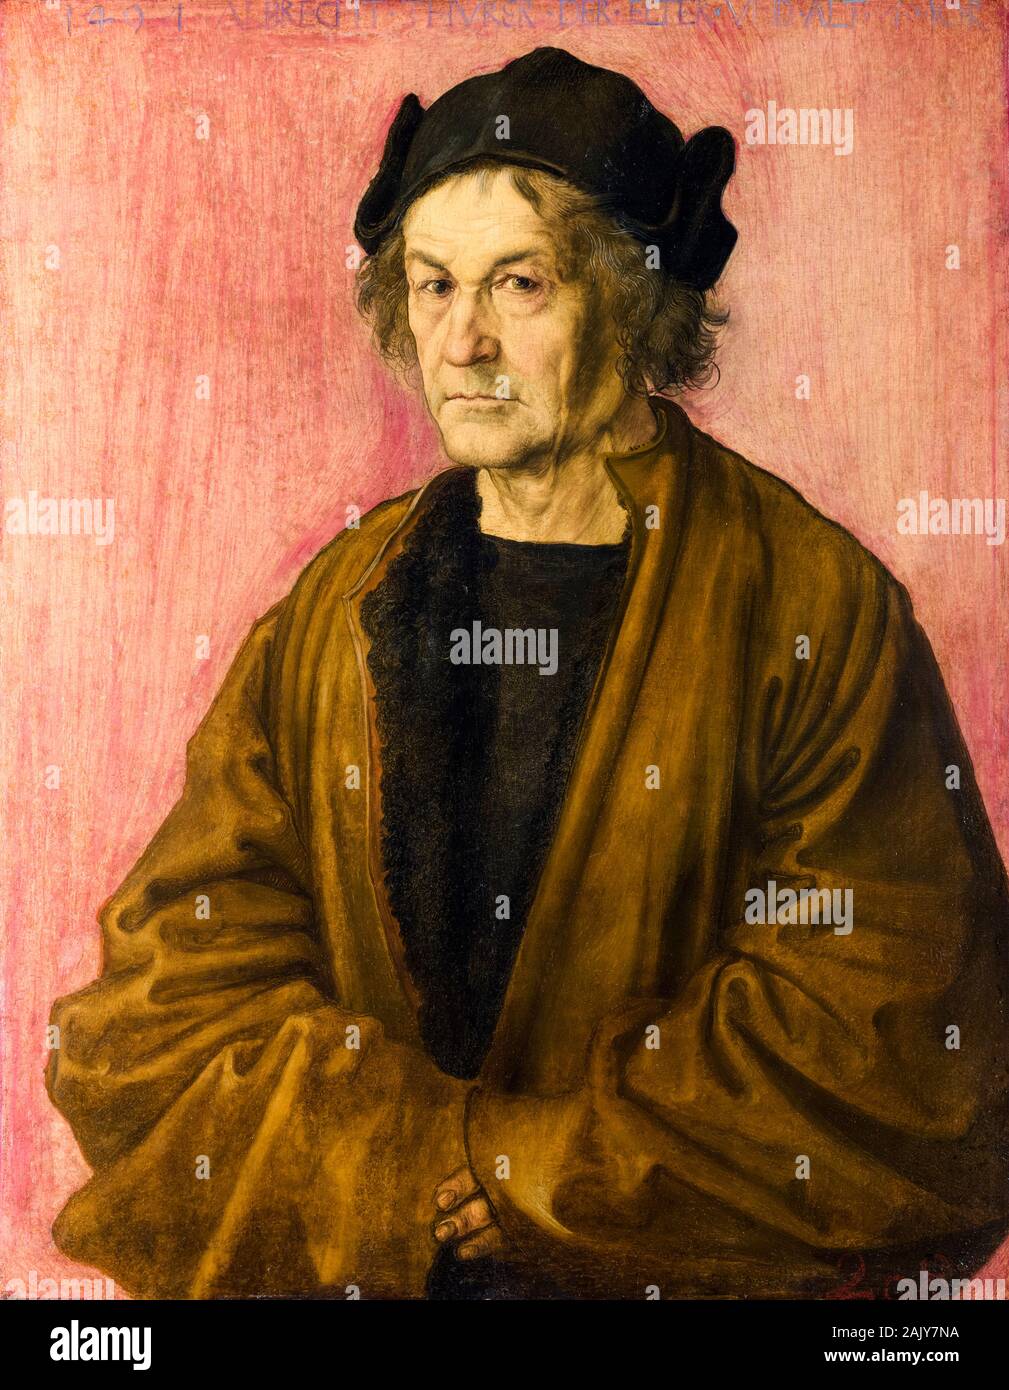 Albrecht Dürer, portrait painting, The Painter's Father, 1497 Stock Photo